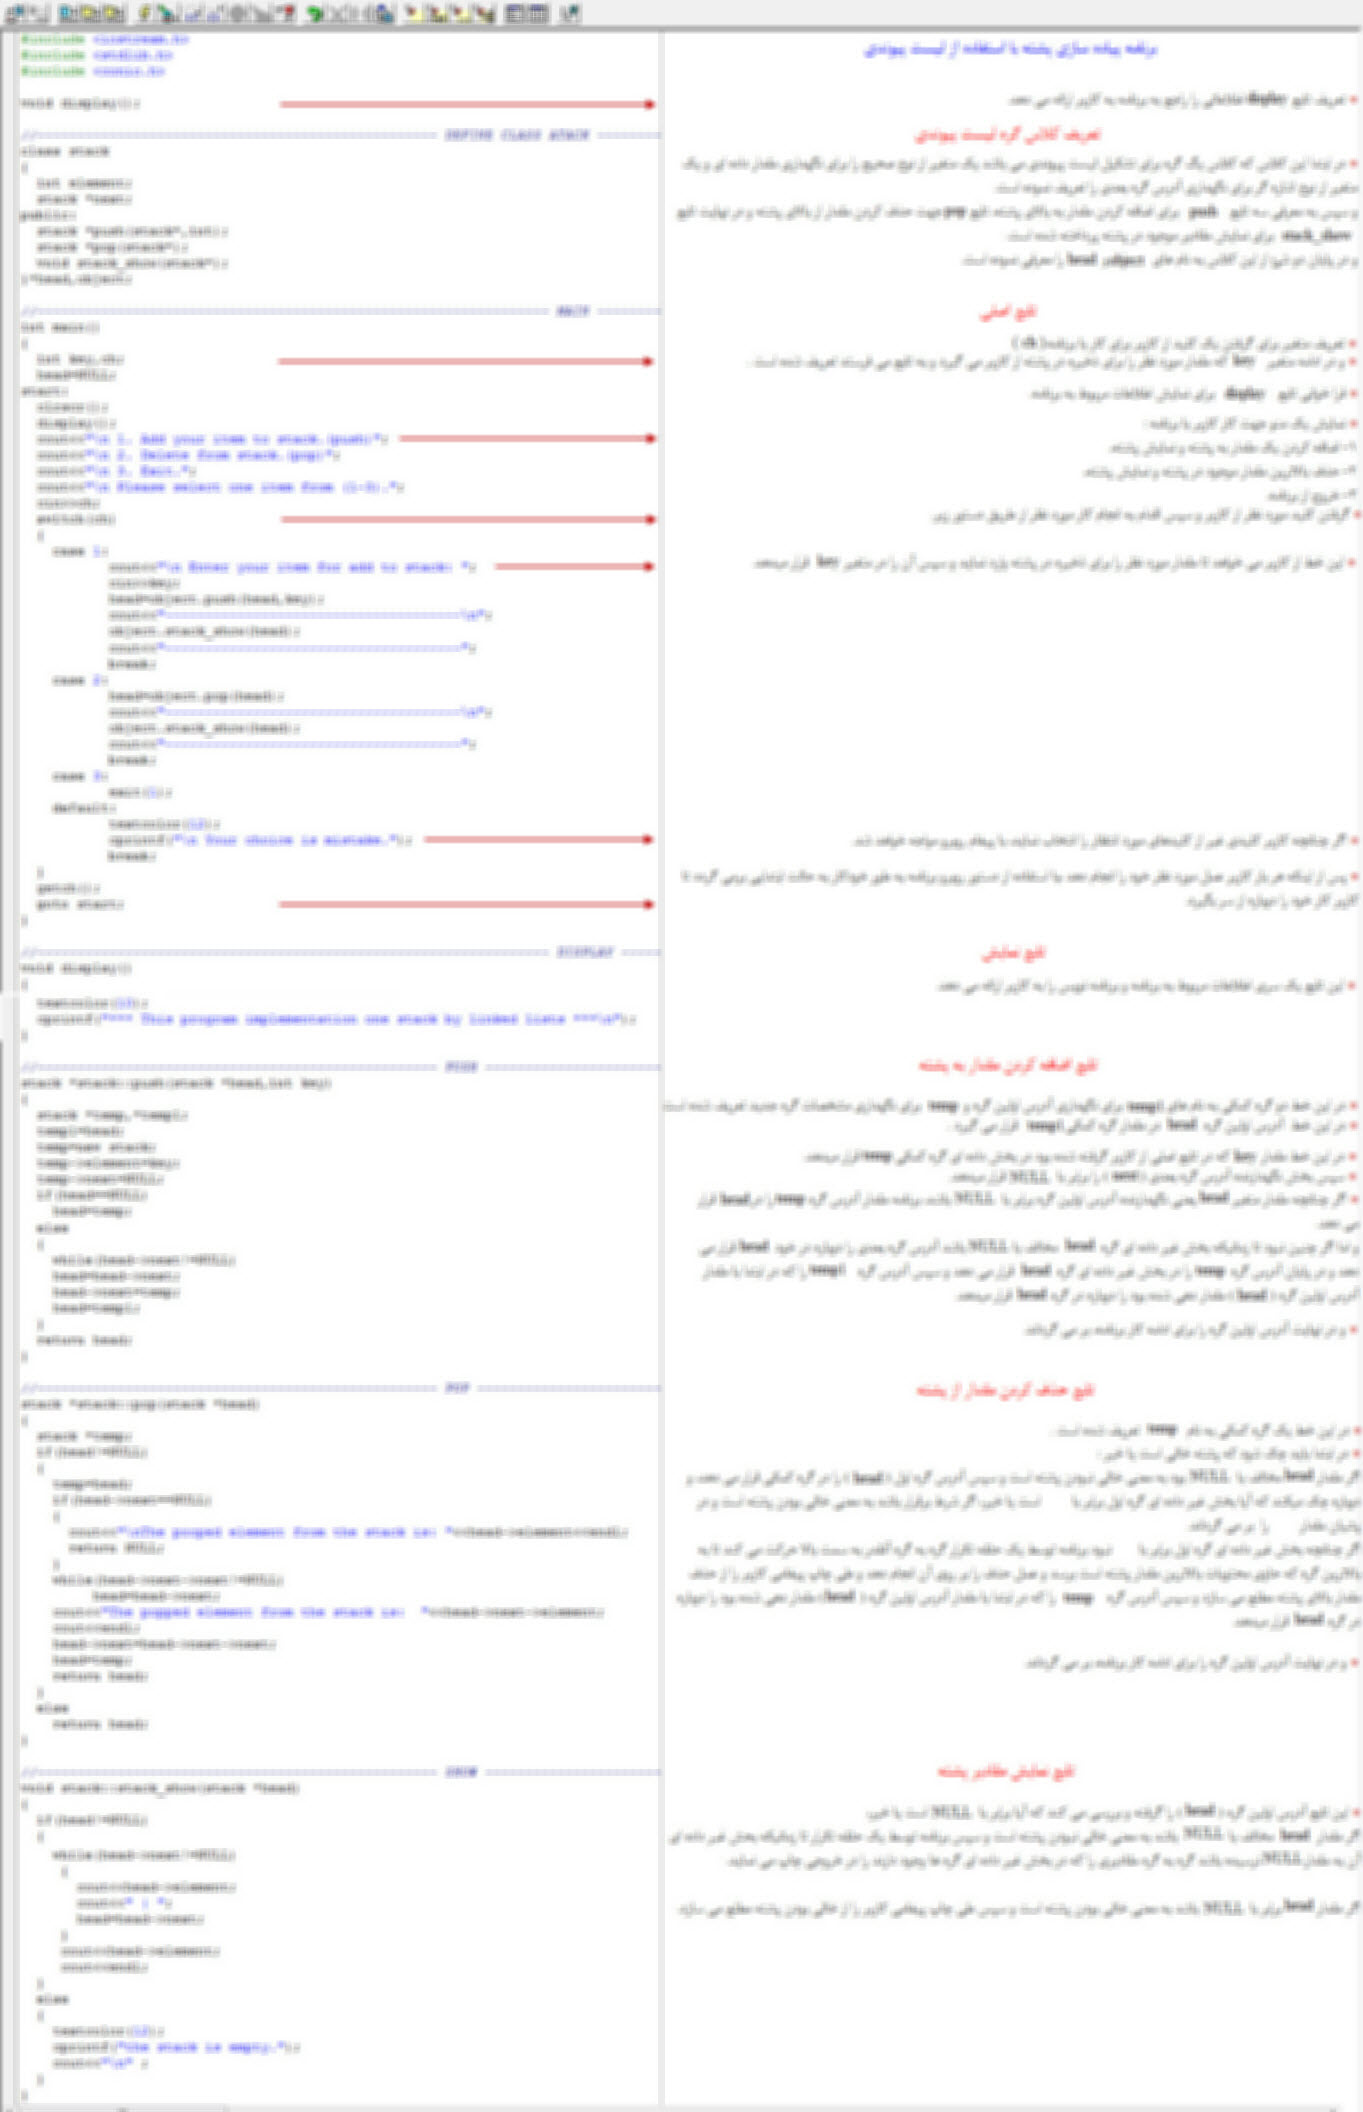 سورس برنامه پیاده سازی پشته با استفاده از لیست پیوندی